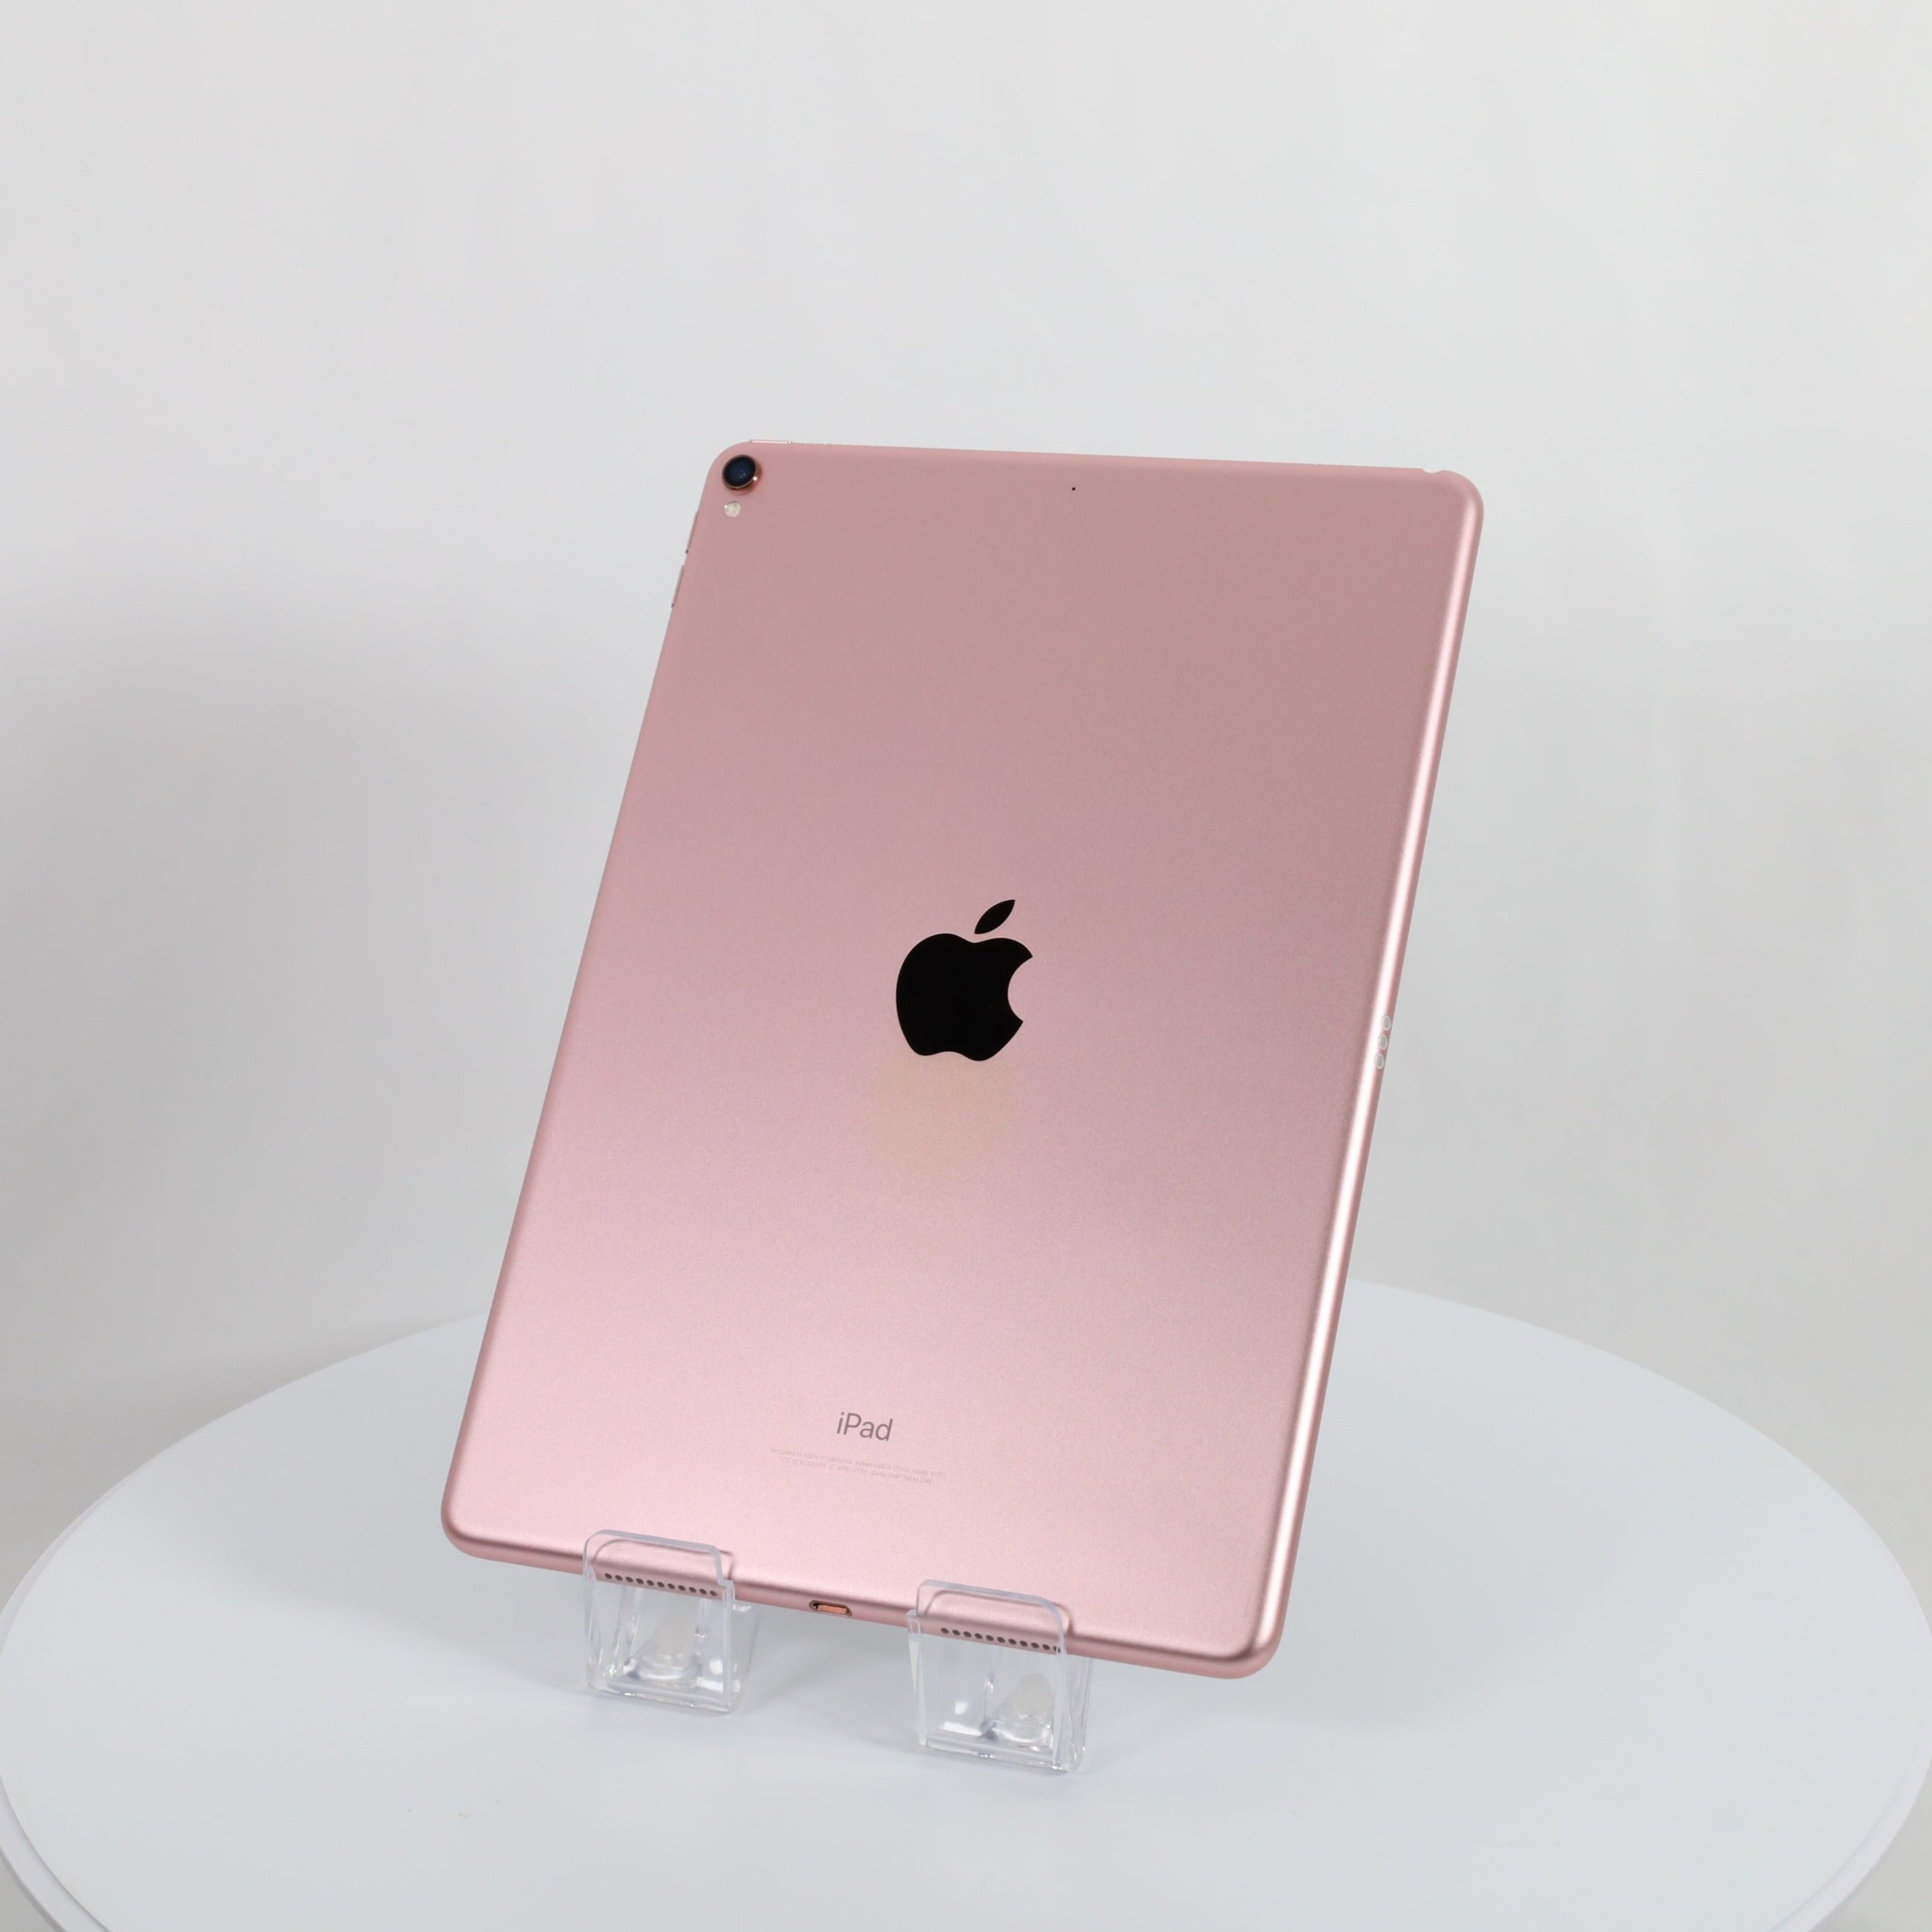 Cランク】【中古】iPadPro (10.5インチ) Wi-Fi 32GB ローズゴールド